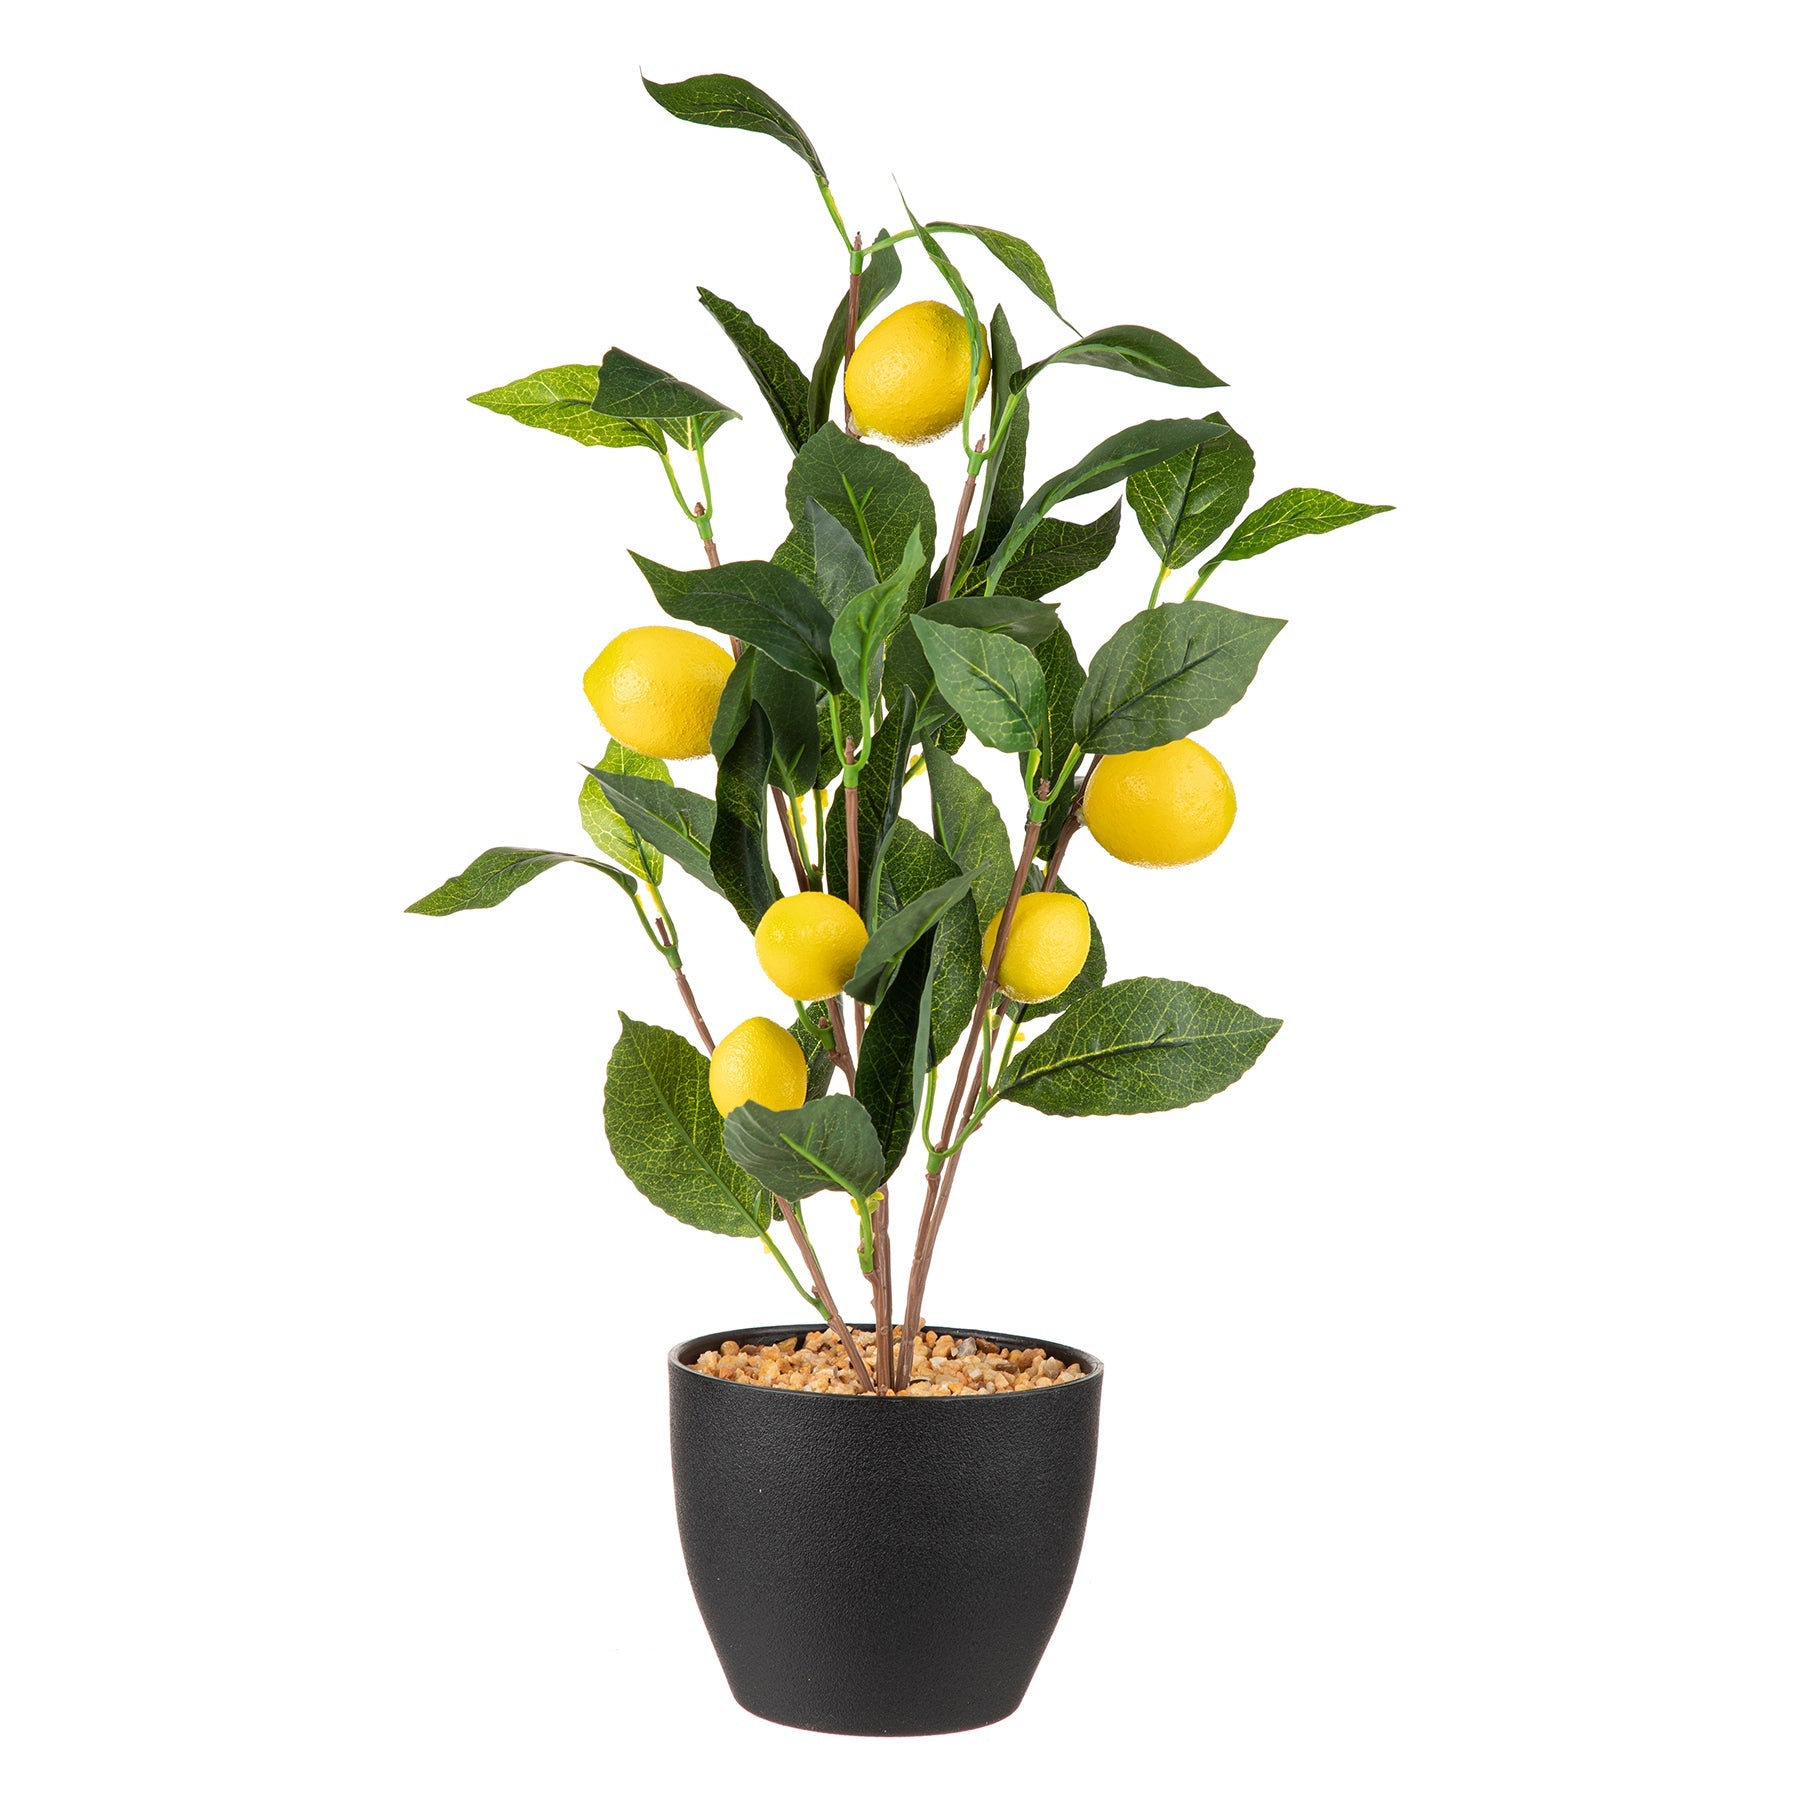 Lemon Tree in Black Plastic Pot 17in